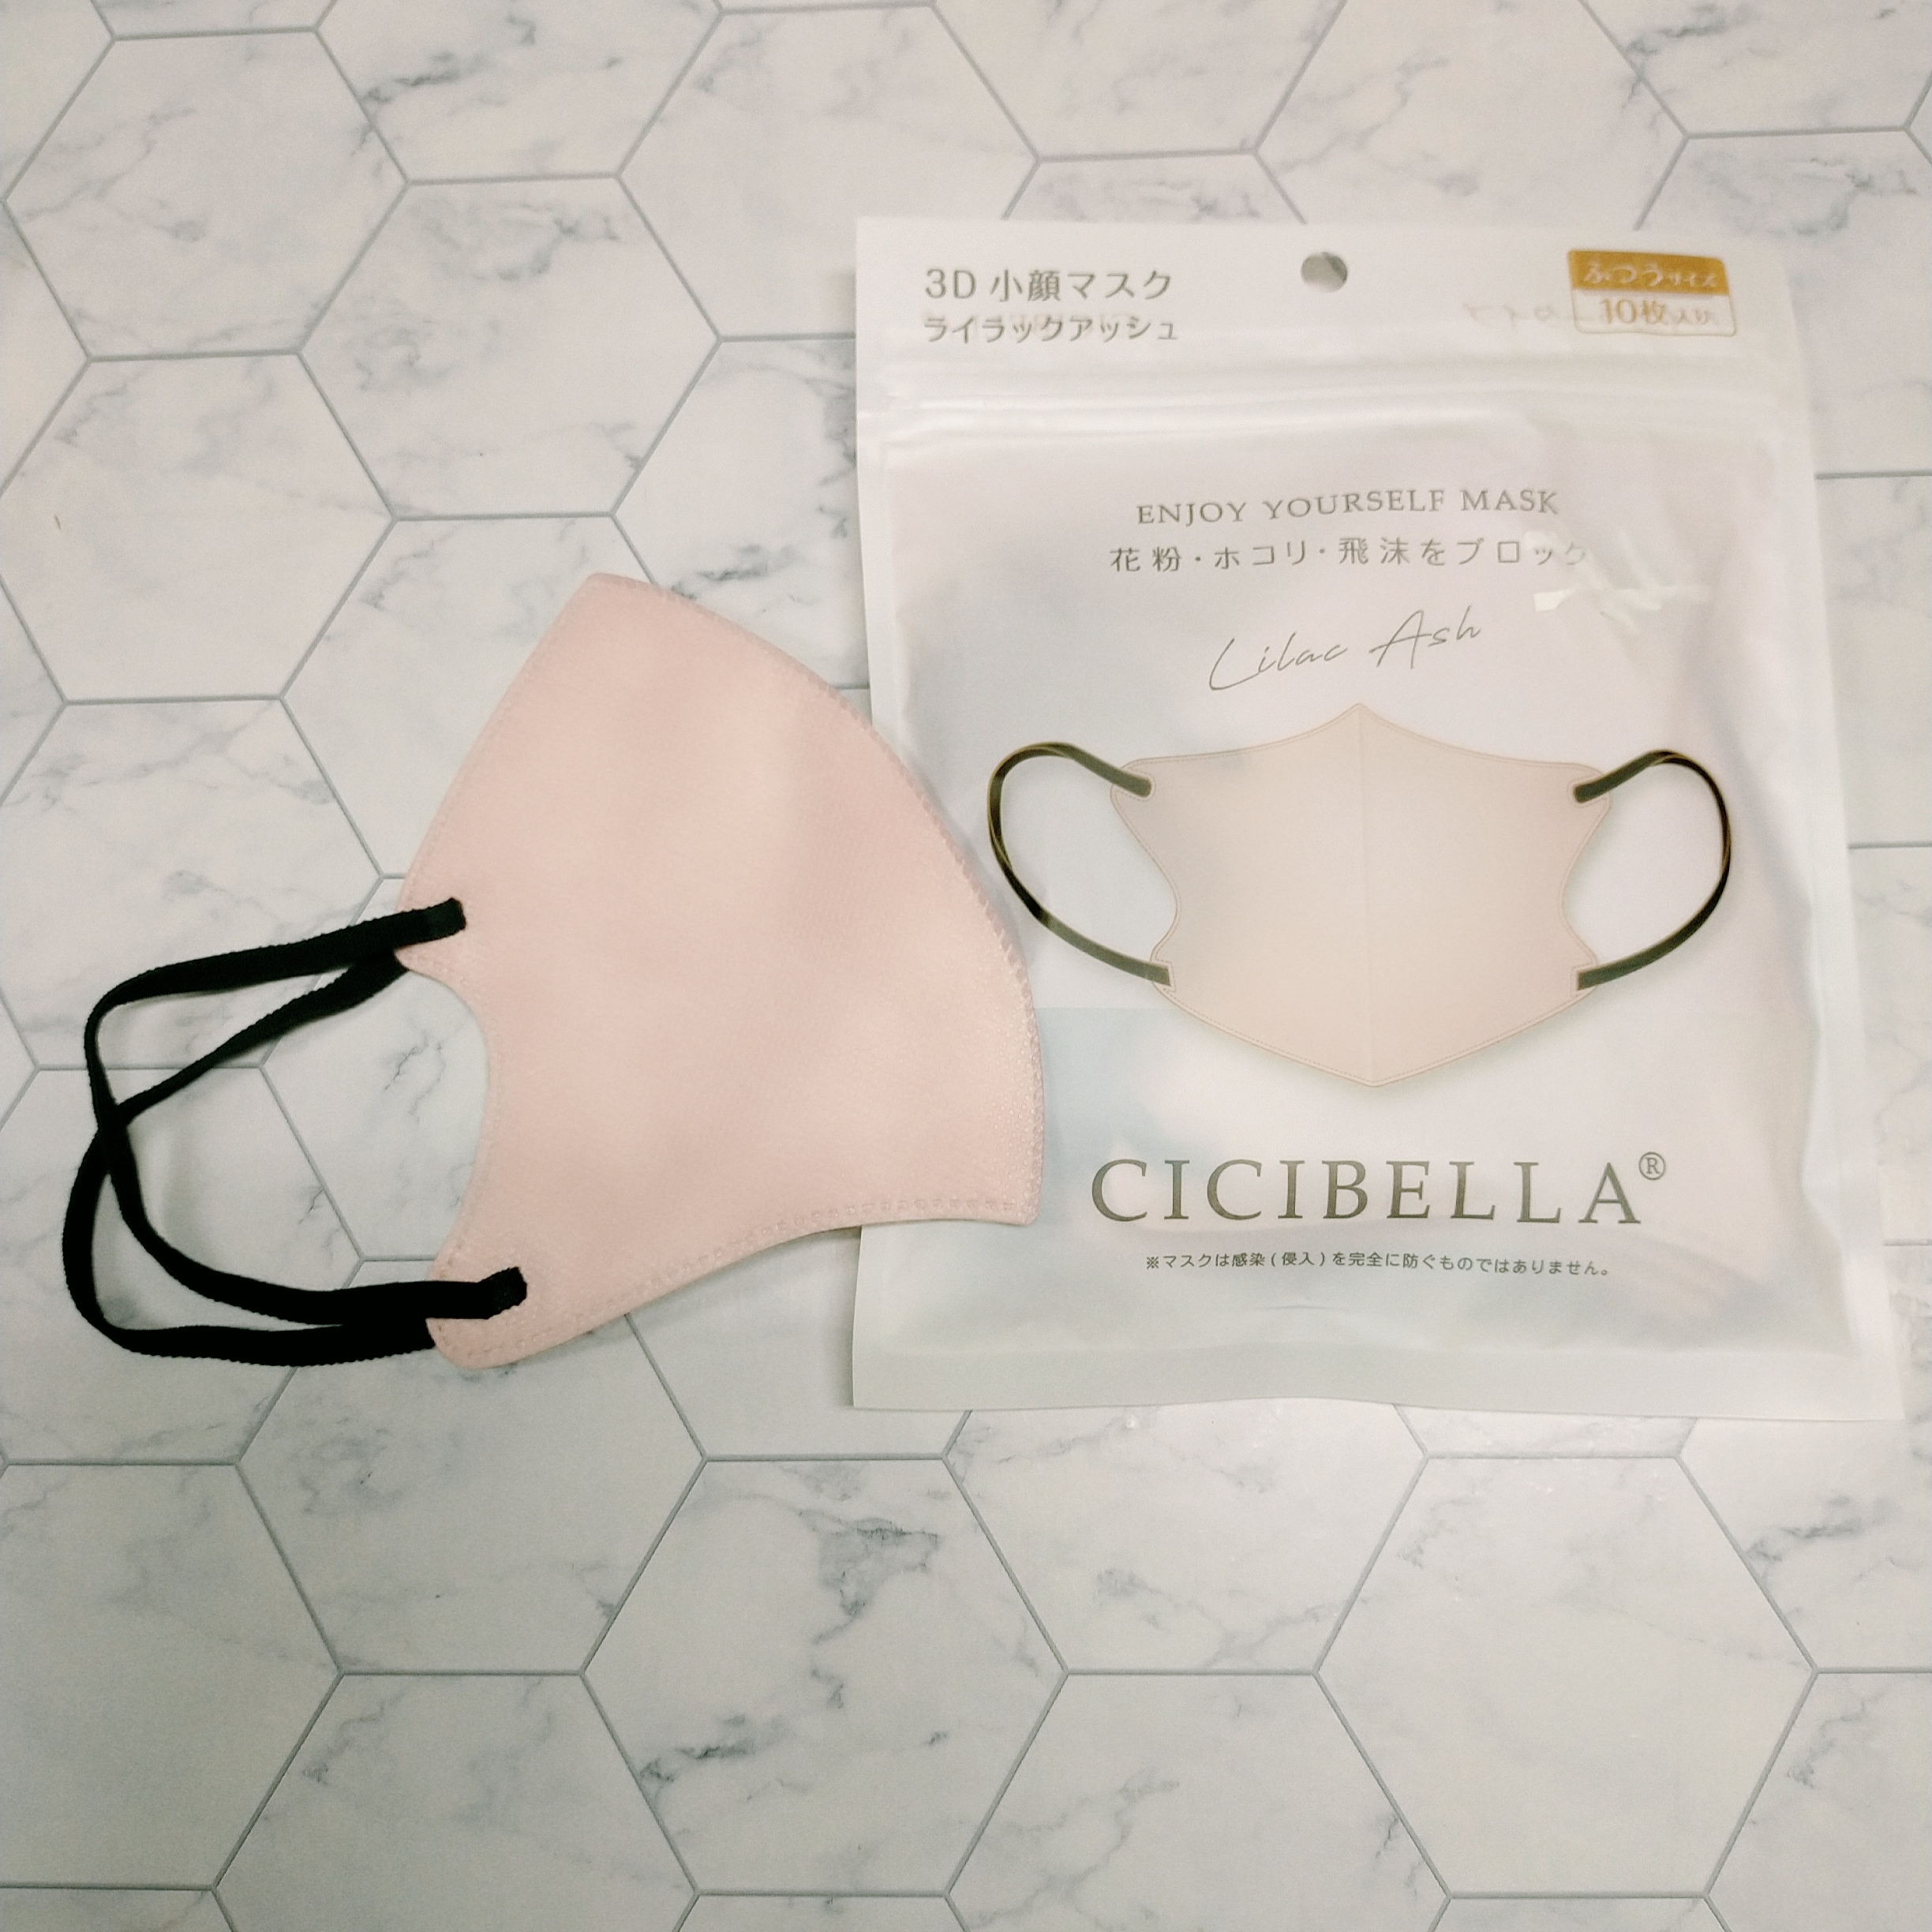 CICIBELLA(シシベラ) 3D立体マスクの良い点・メリットに関するみこさんの口コミ画像1